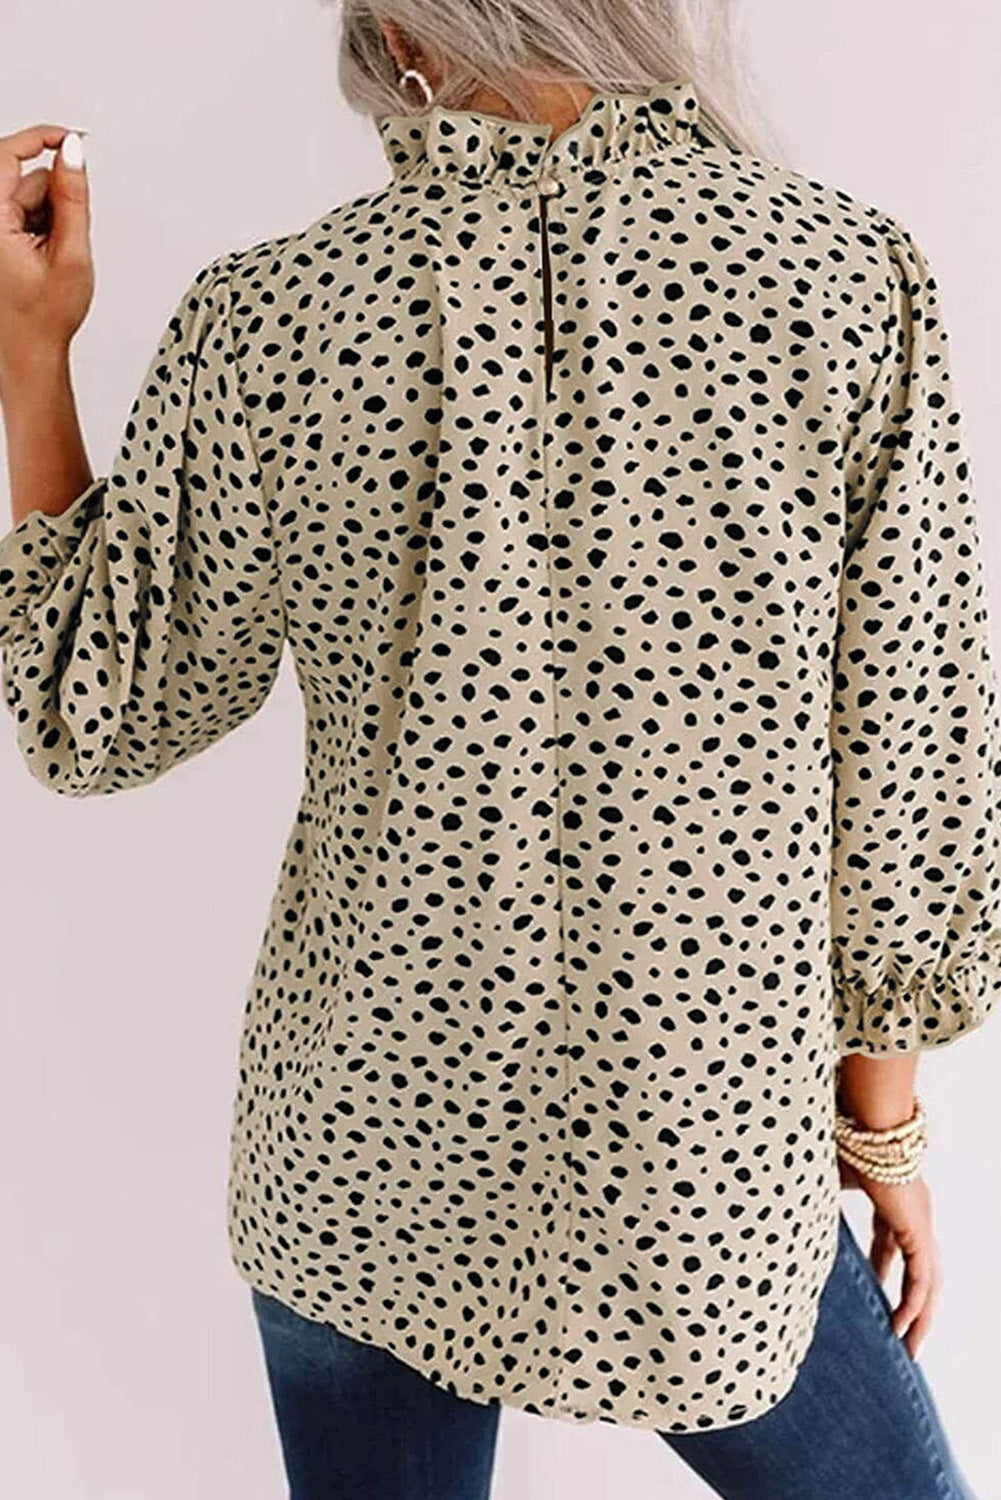 Kaki bluza z naborki in 3/4 rokavi v obliki geparda